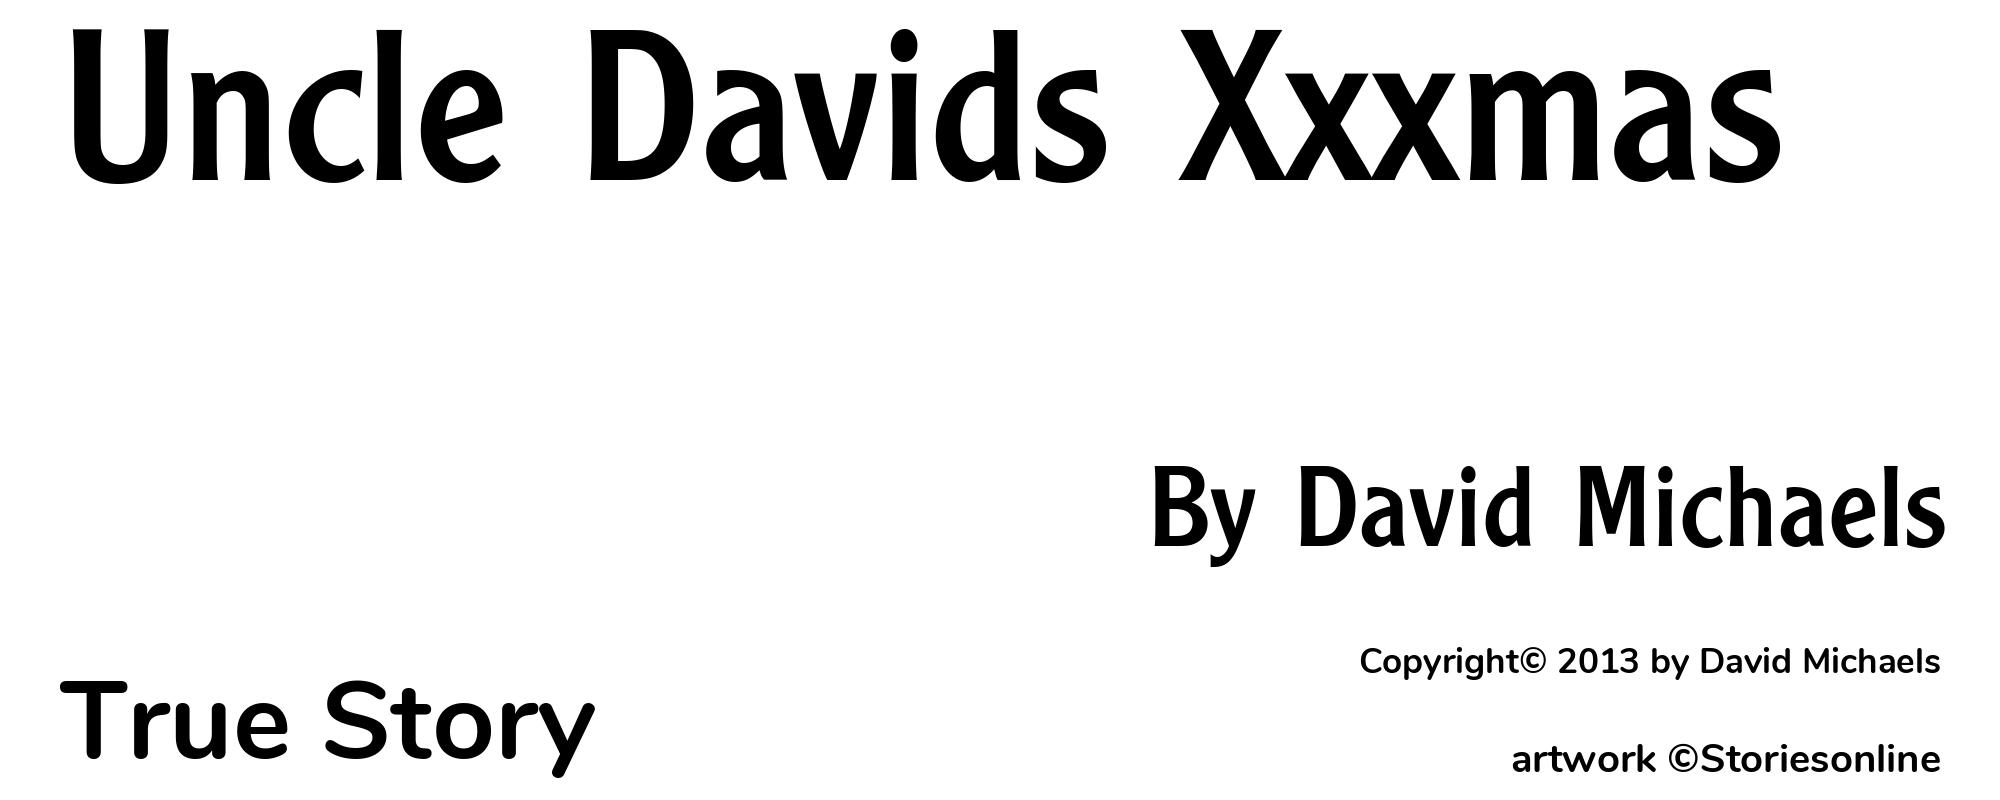 Uncle Davids Xxxmas - Cover